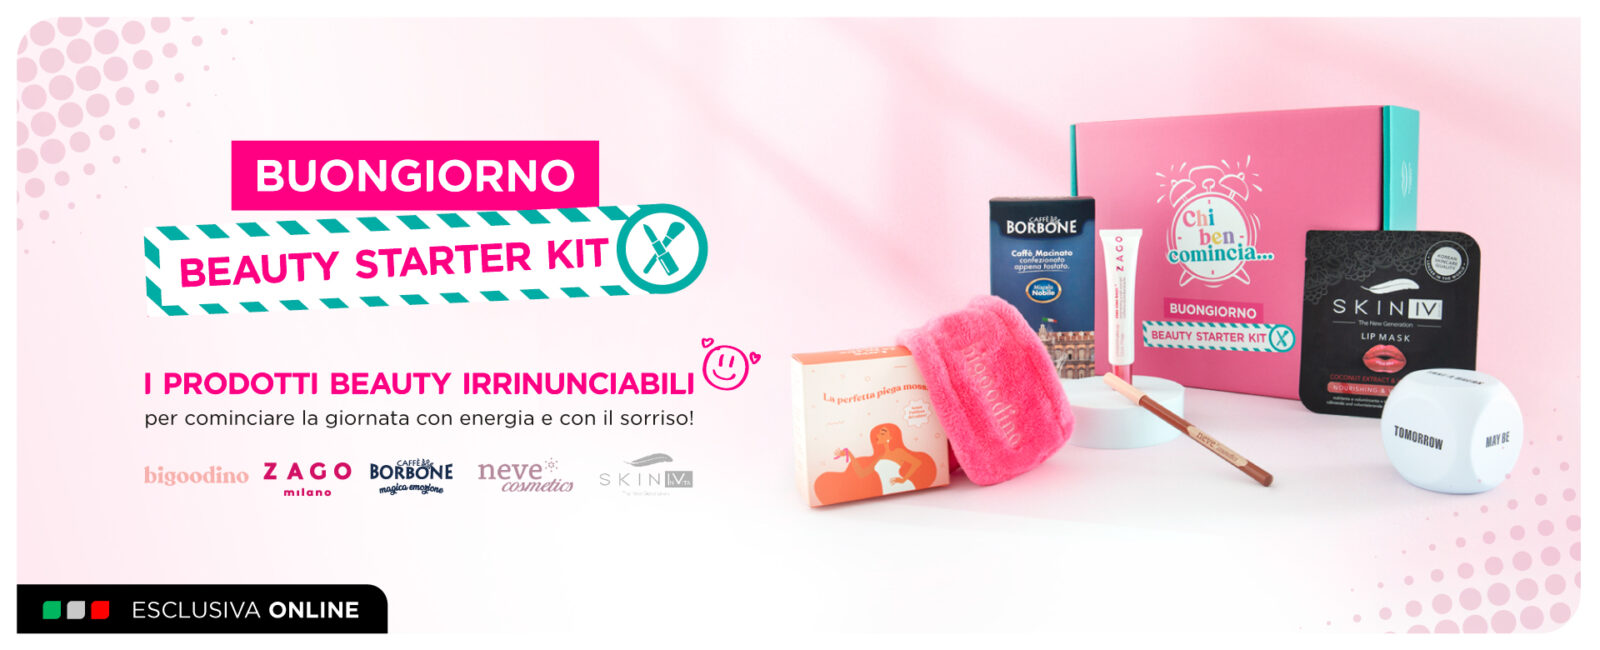 È arrivato “BUONGIORNO” il Beauty Starter Kit per risvegli pieni di  energia! ☕️ - Ethos